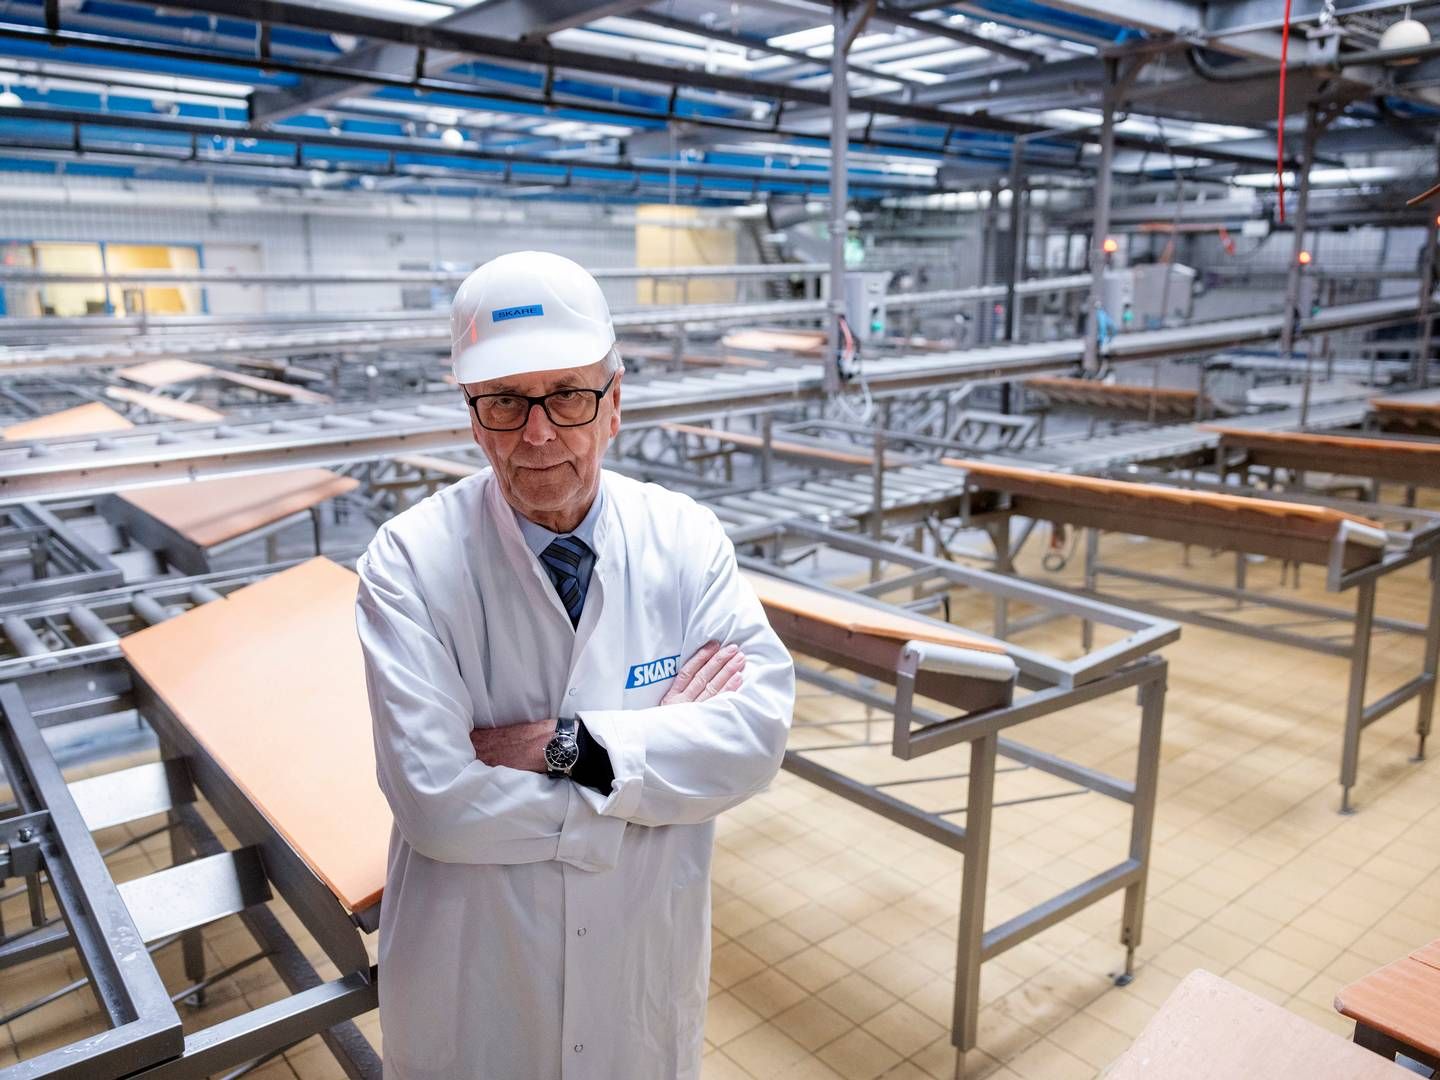 Fra 1. december og frem til konkursen i Skare-koncernen 1. februar solgte hollandsk slagteri Kød for 13,9 mio. kr. til Vejen-selskaberne. | Foto: Casper Dalhoff